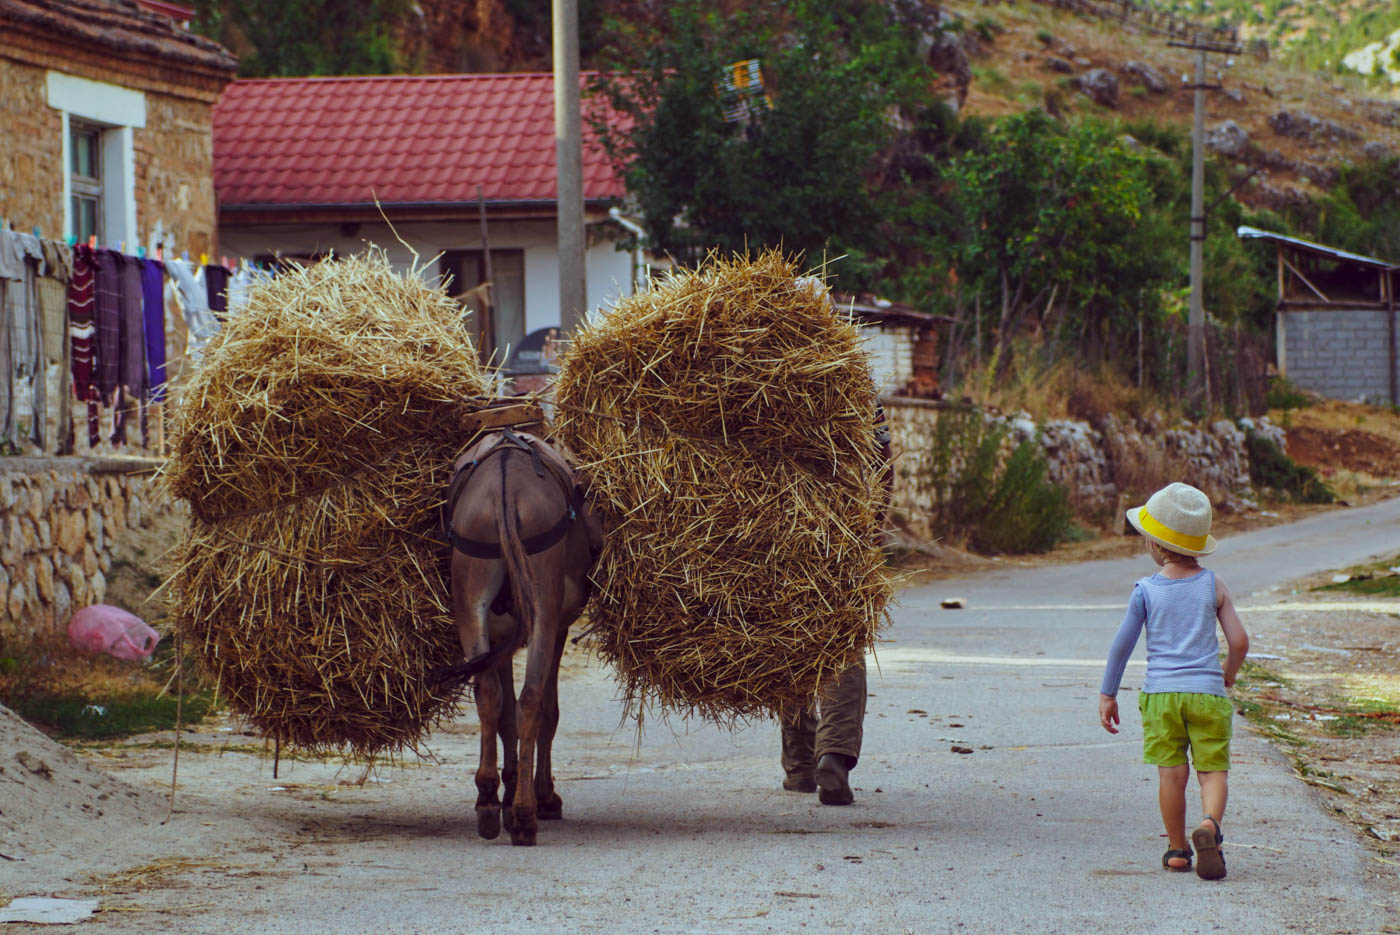 Zu sehen ist wie ein Esel schwer mit Heu beladen durch die Straßen eines kleinen Dorfes läuft. Luk läuft neben ihm her.